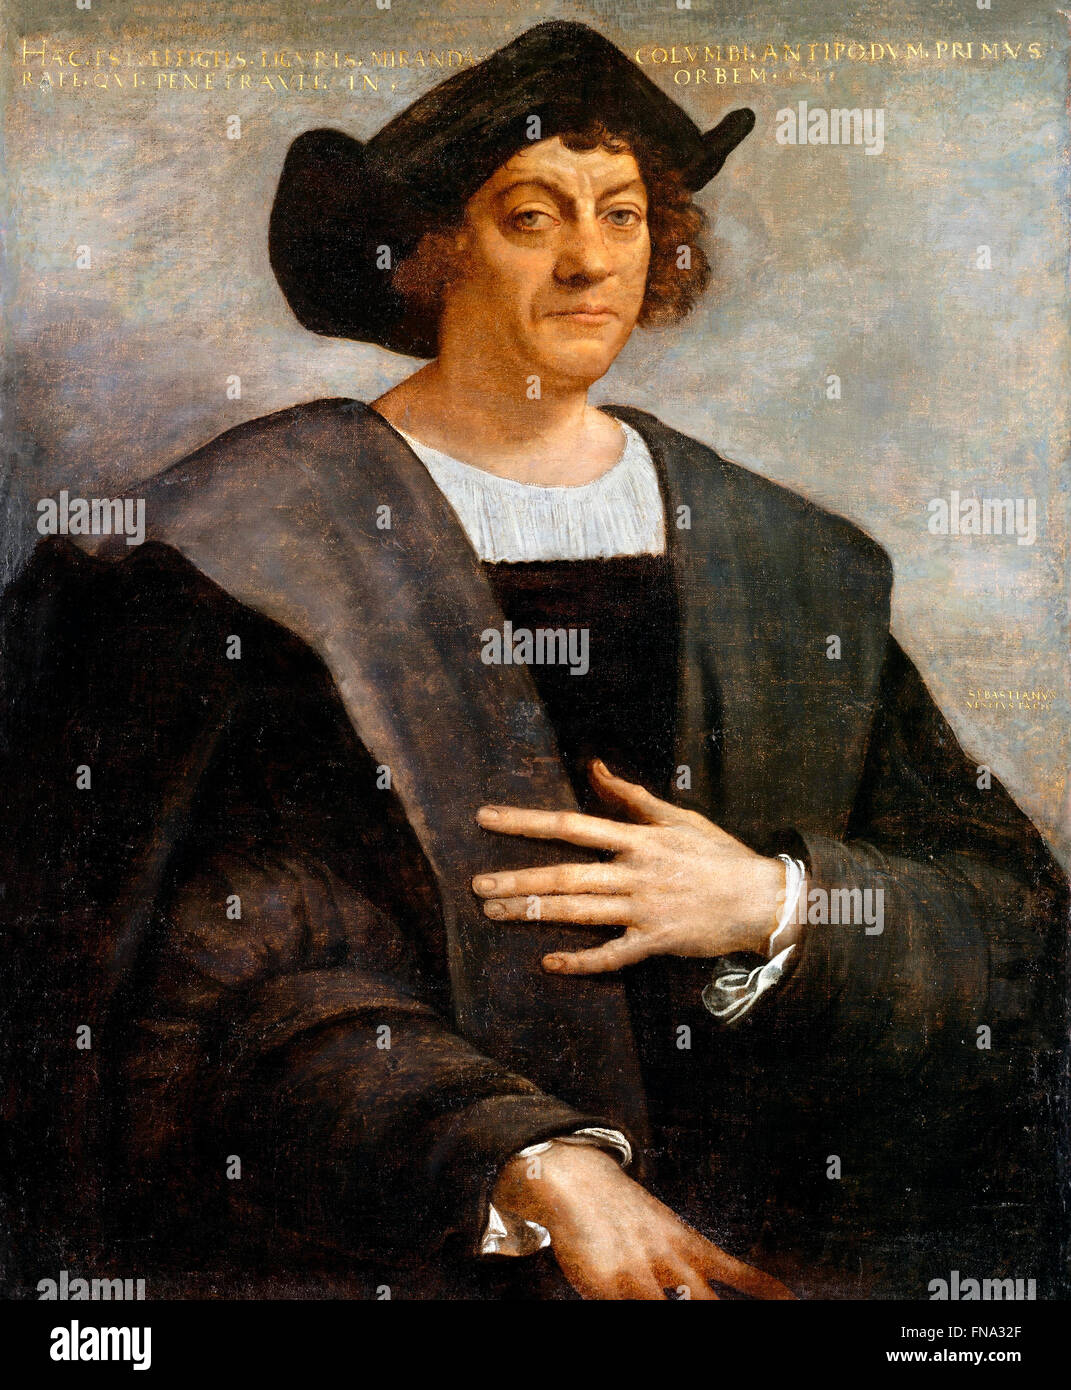 Christopher Columbus. Porträtmalerei, angeblich von Christoph Kolumbus, von Sebastiano del Piombo, 1519 Stockfoto